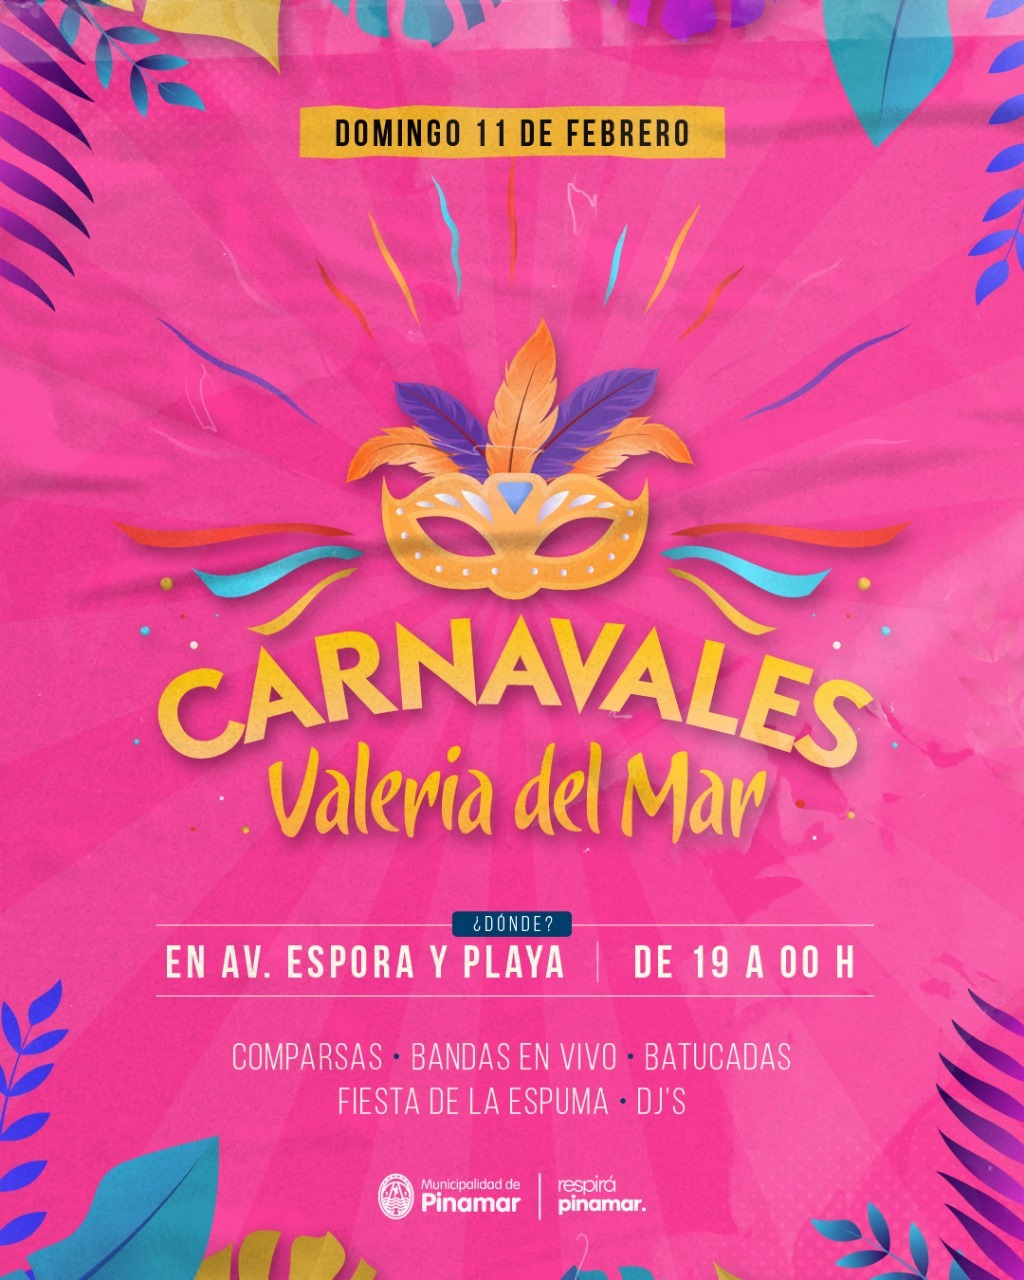 En este momento estás viendo Carnaval en Valeria del Mar